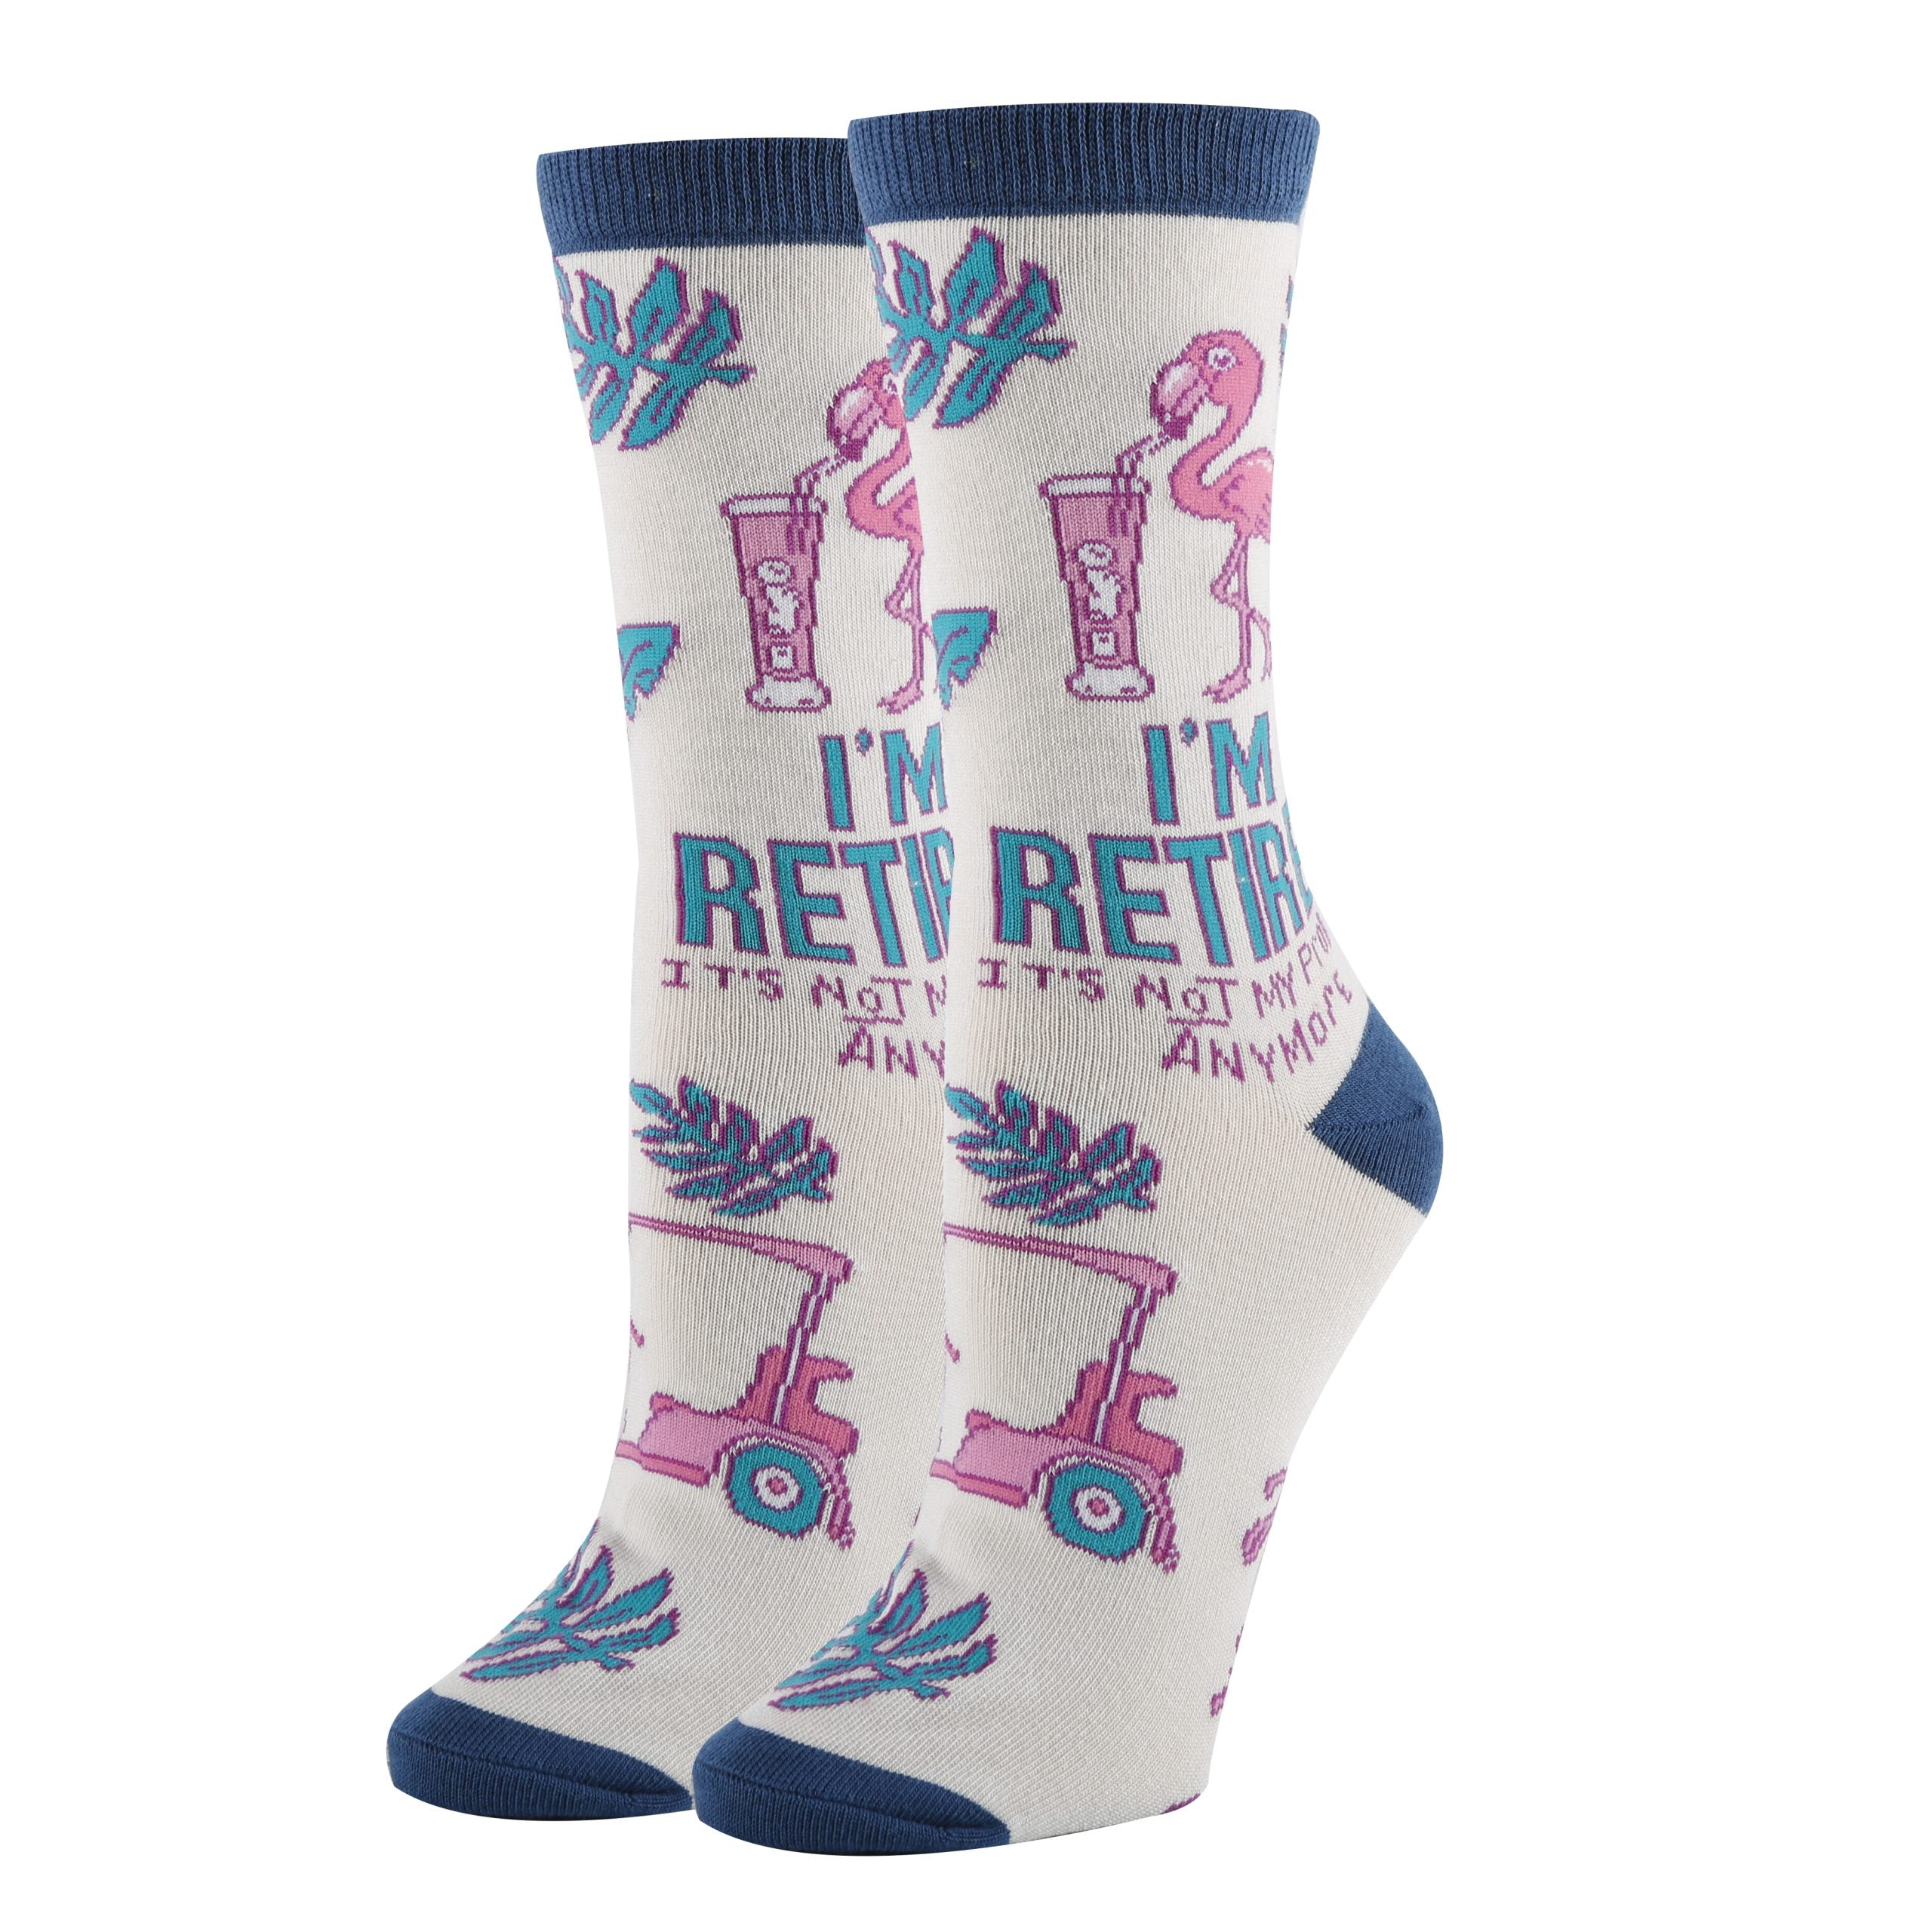 Retired Socks | Funny Crew Socks for Women